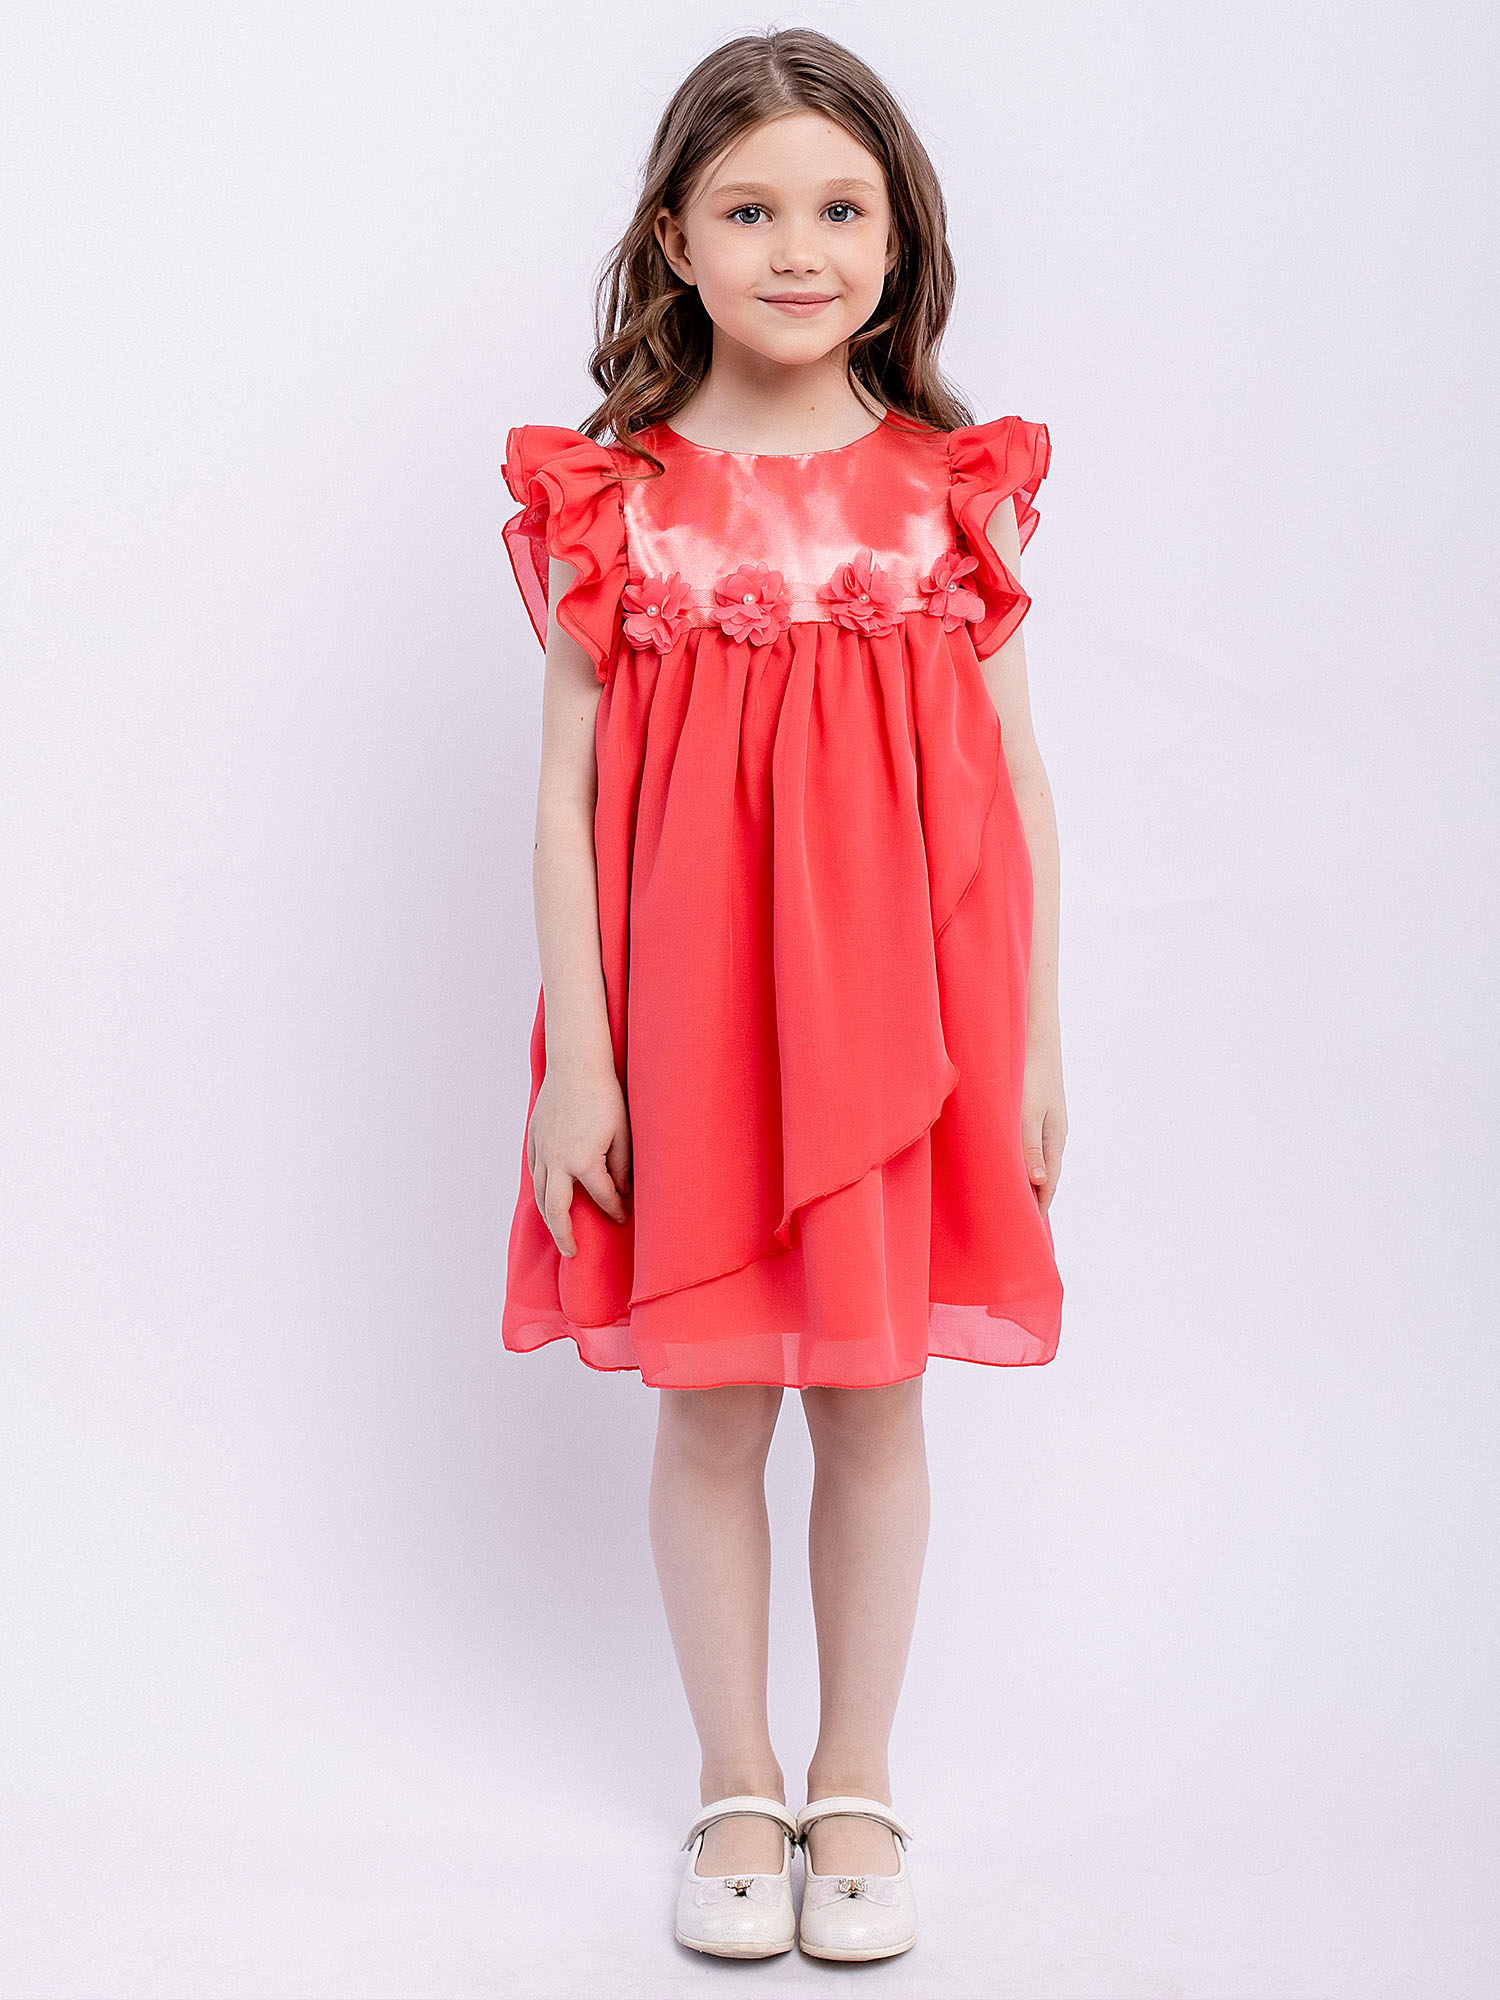 Платье детское Batik 010 п22-2, розовый фламинго, 110